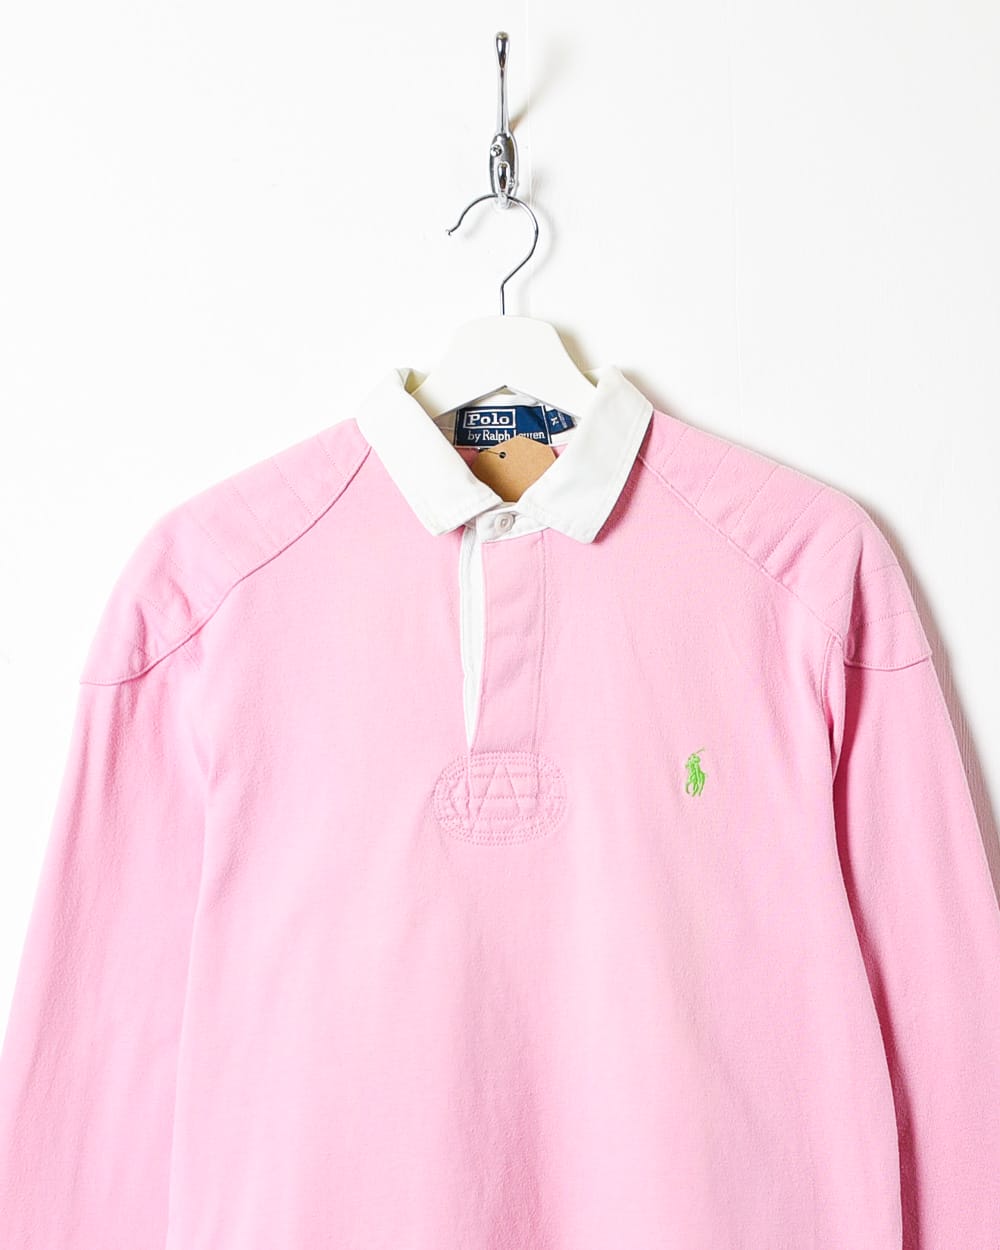 Pink Polo Ralph Lauren Rugby Shirt - Medium